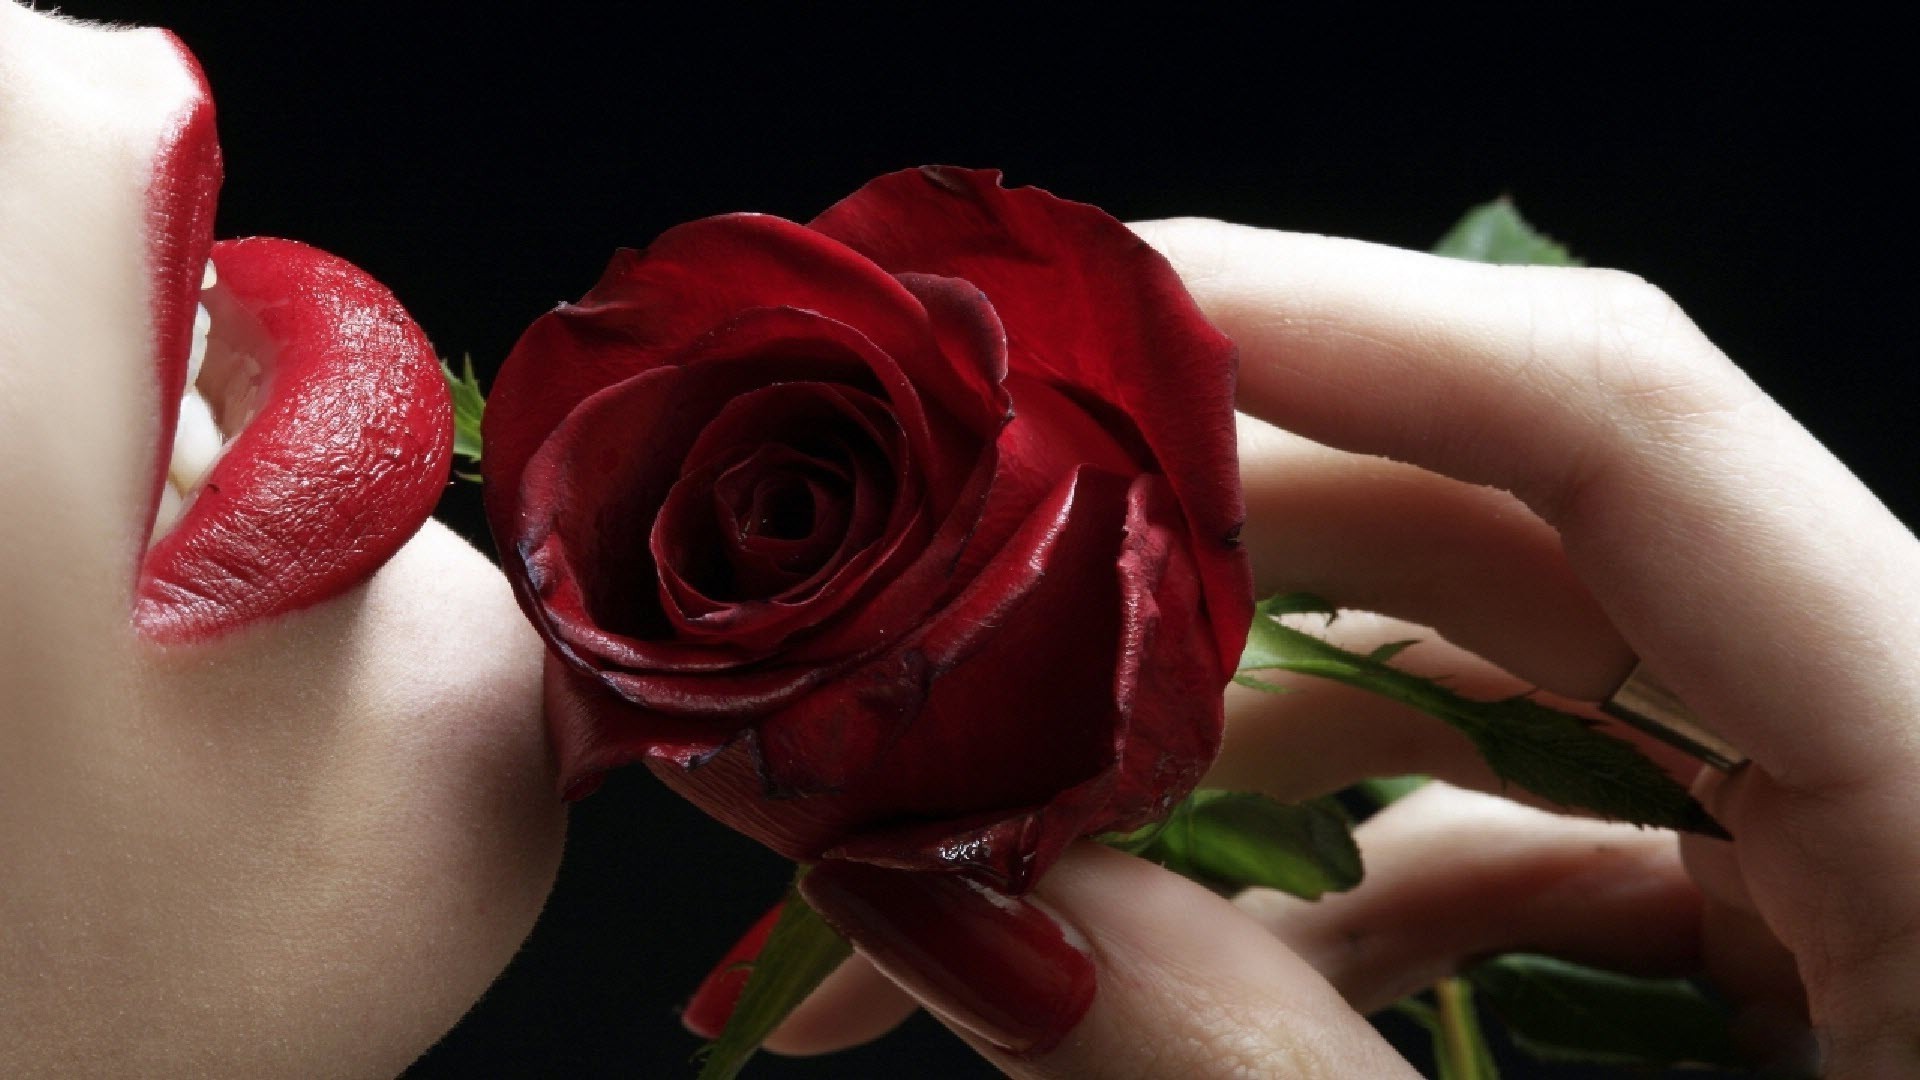 цветы роза цветок любовь свадьба романтика лепесток цветочные романтический подарок красивые юбилей любовь невеста блюминг лист брак букет природа участие флора